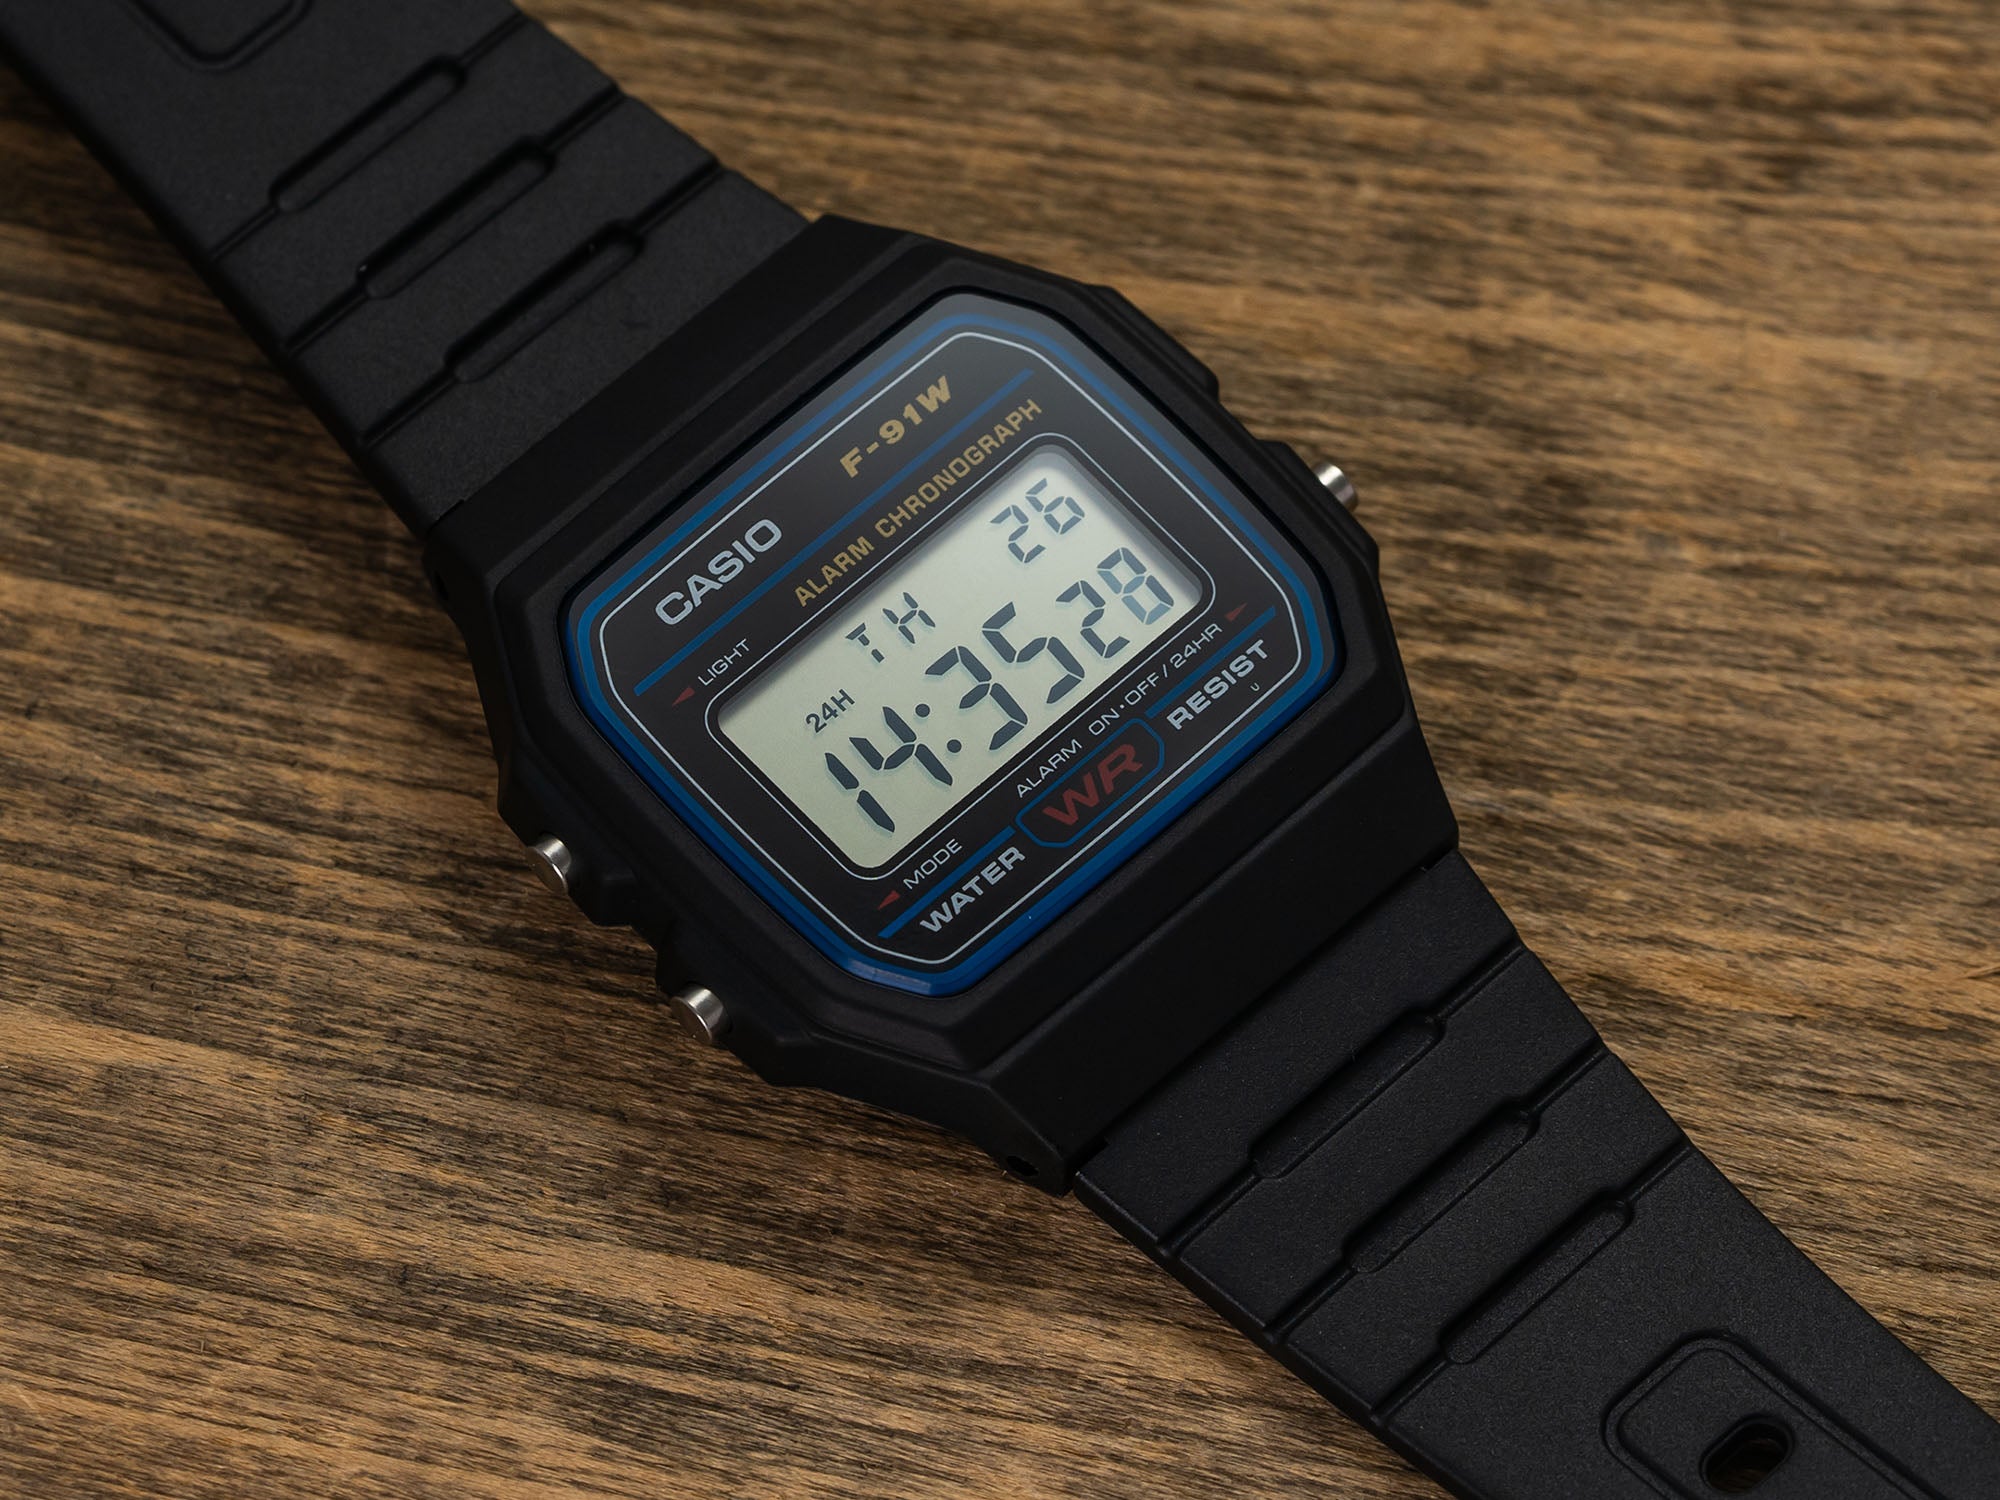 Casio F91W watch